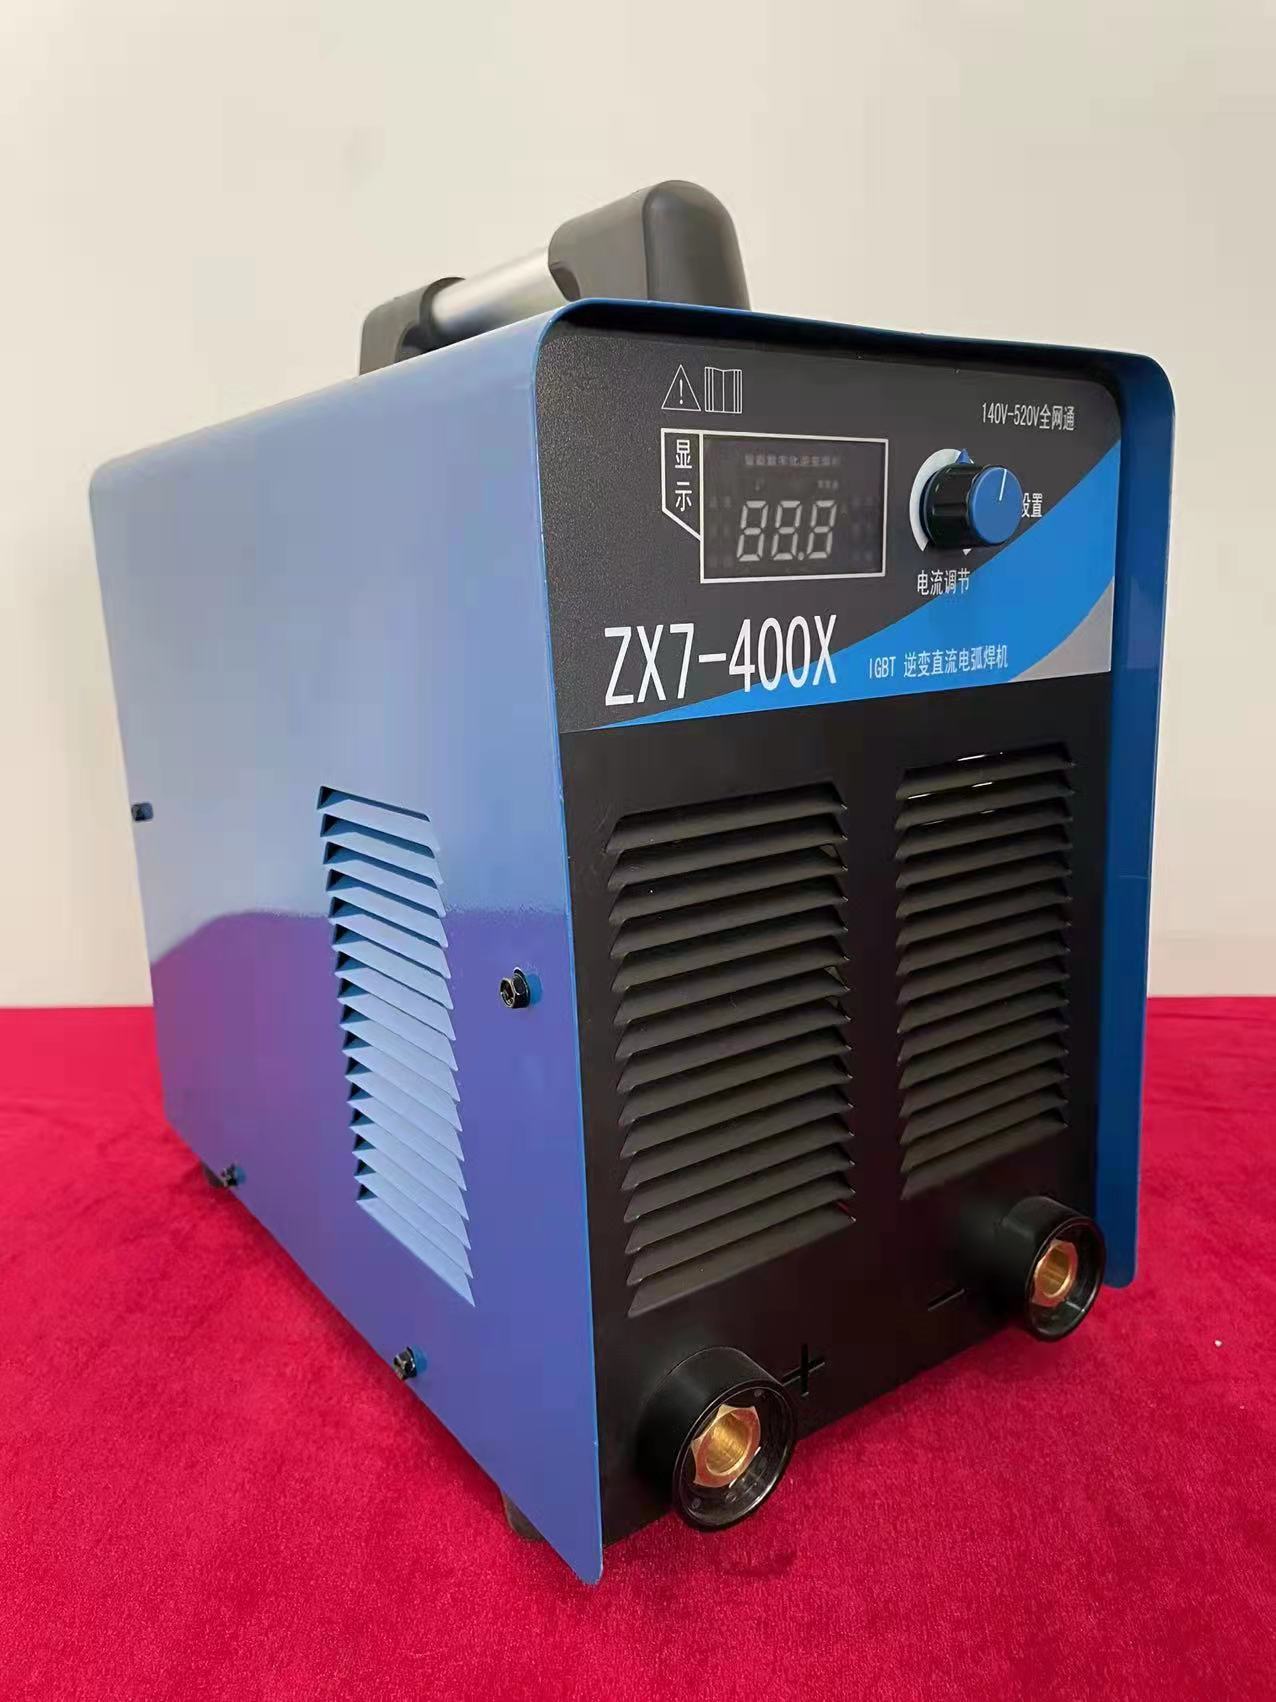 【手工焊机】ZX7-400X